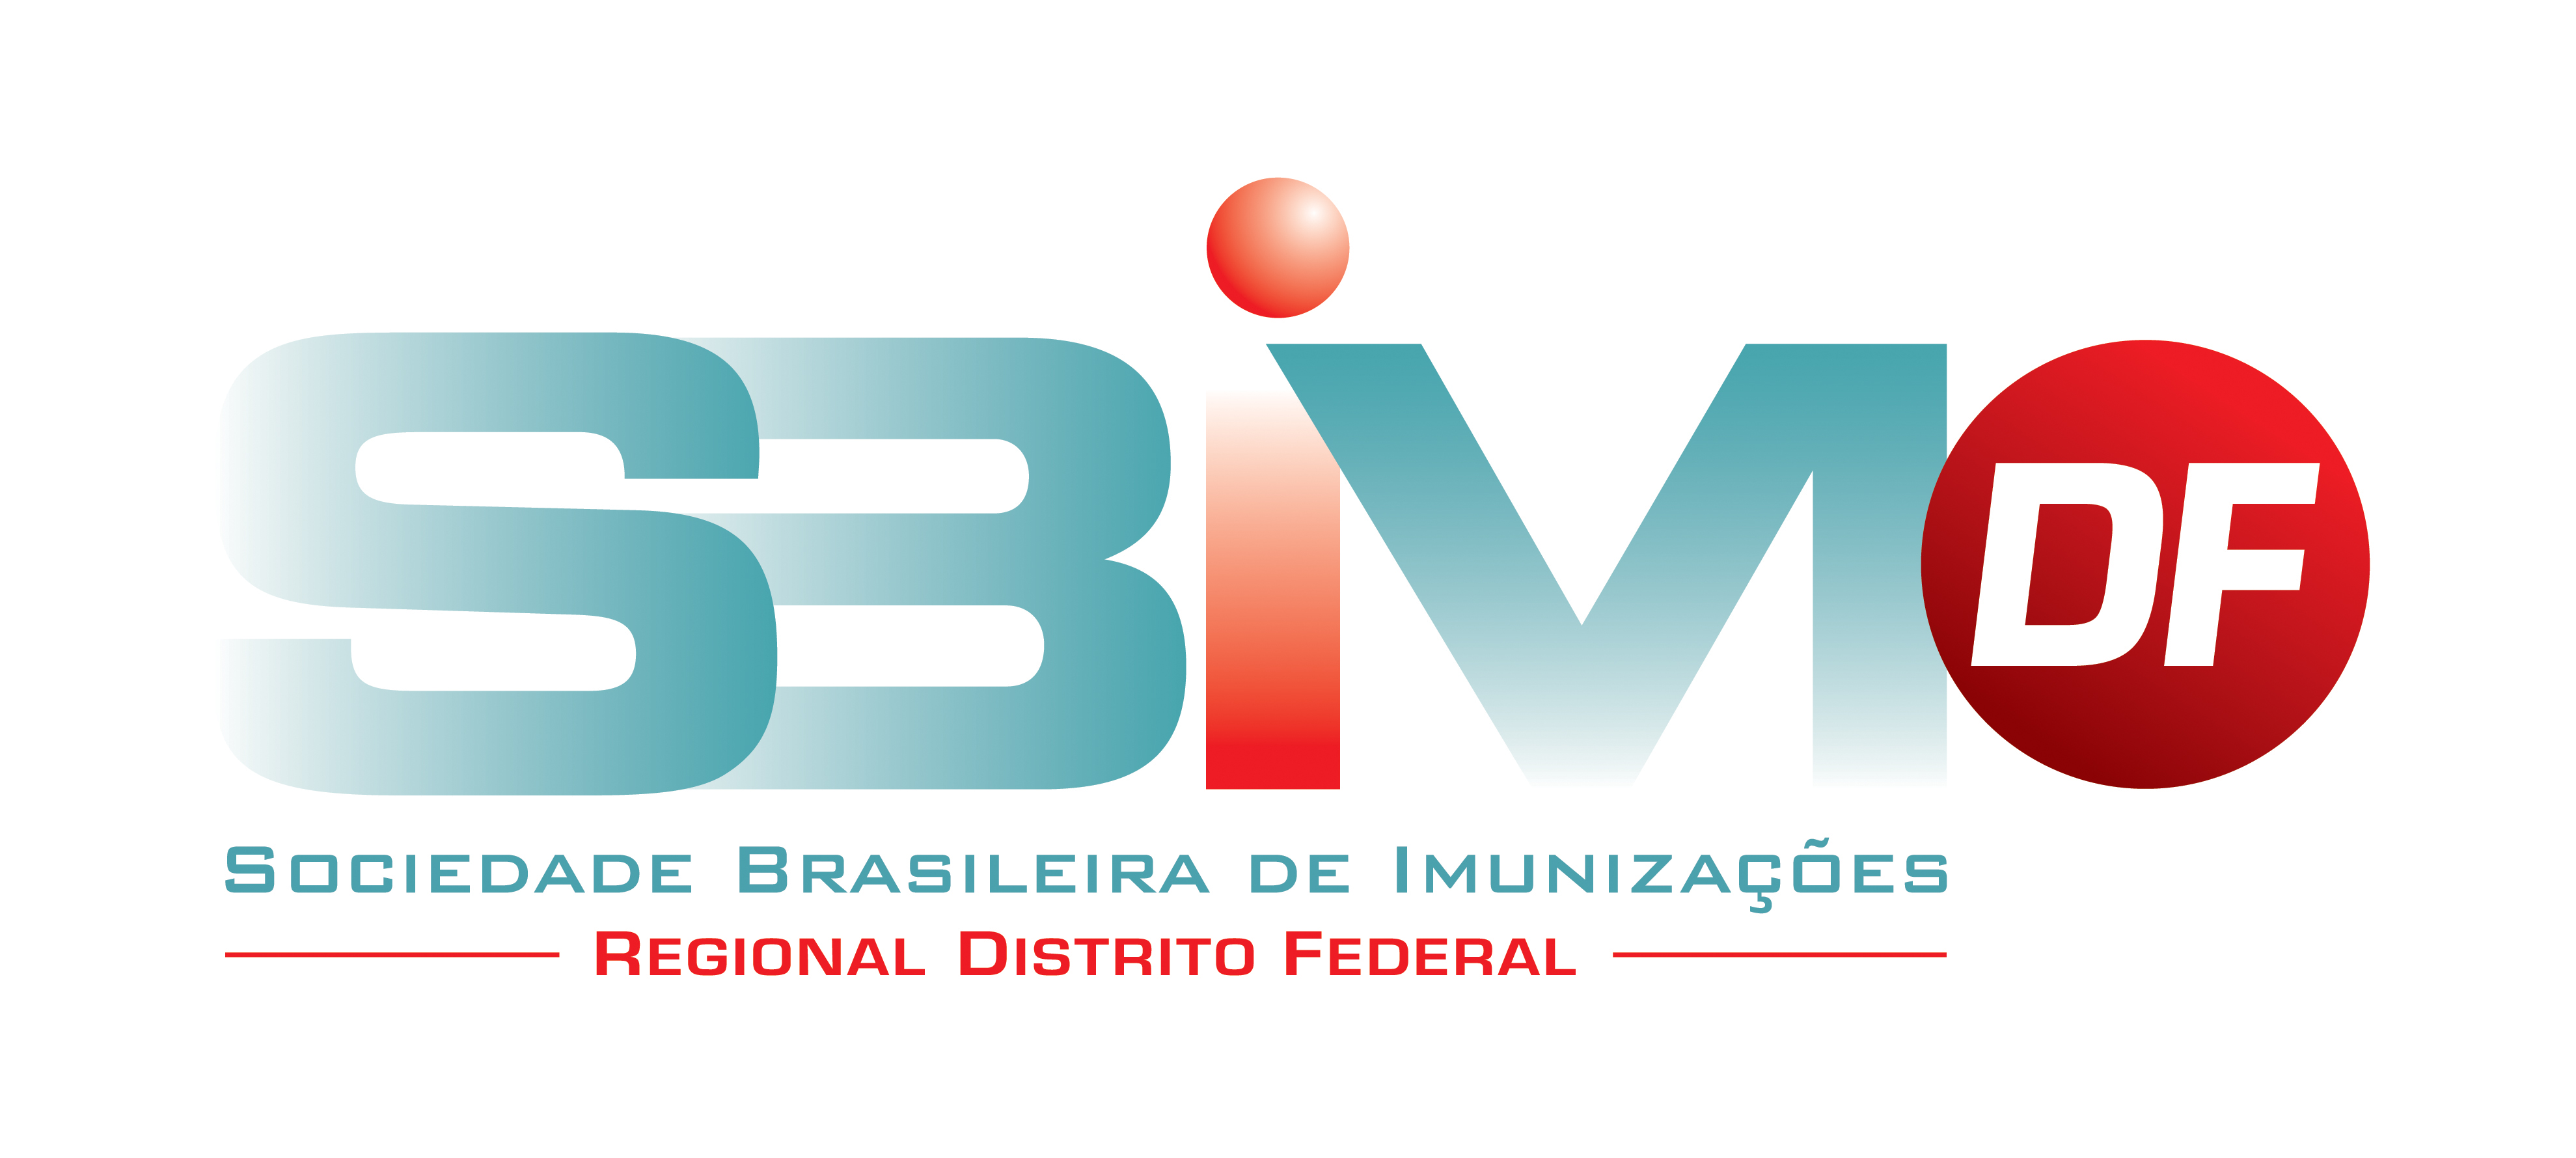 6ª JORNADA DE IMUNIZAÇÕES - Regional Distrito Federal